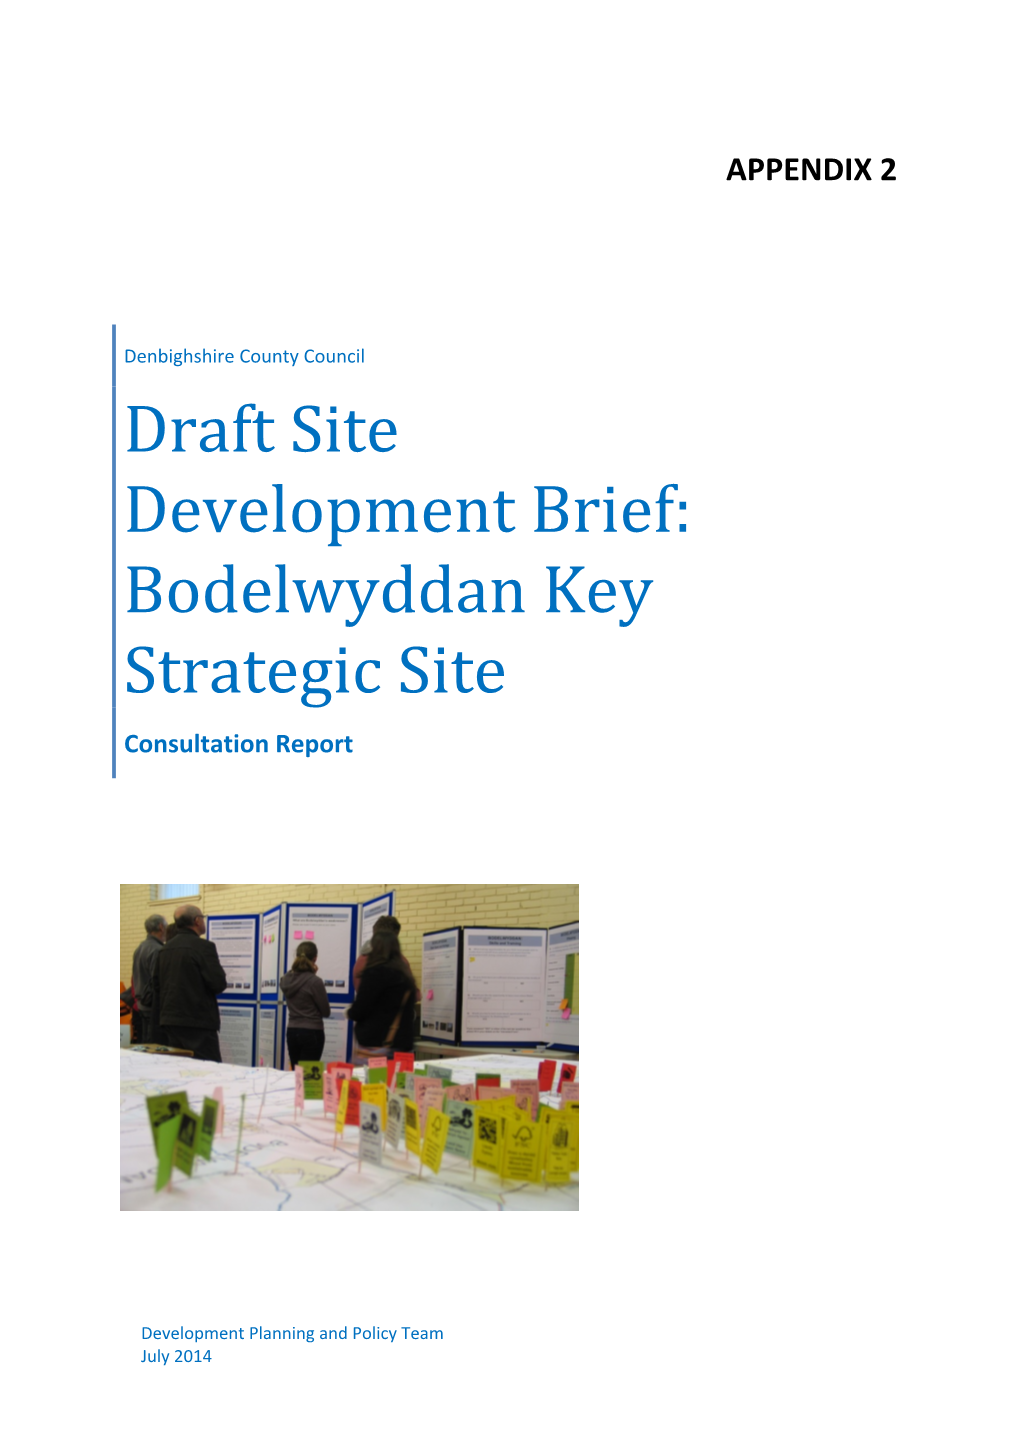 Bodelwyddan Key Strategic Site